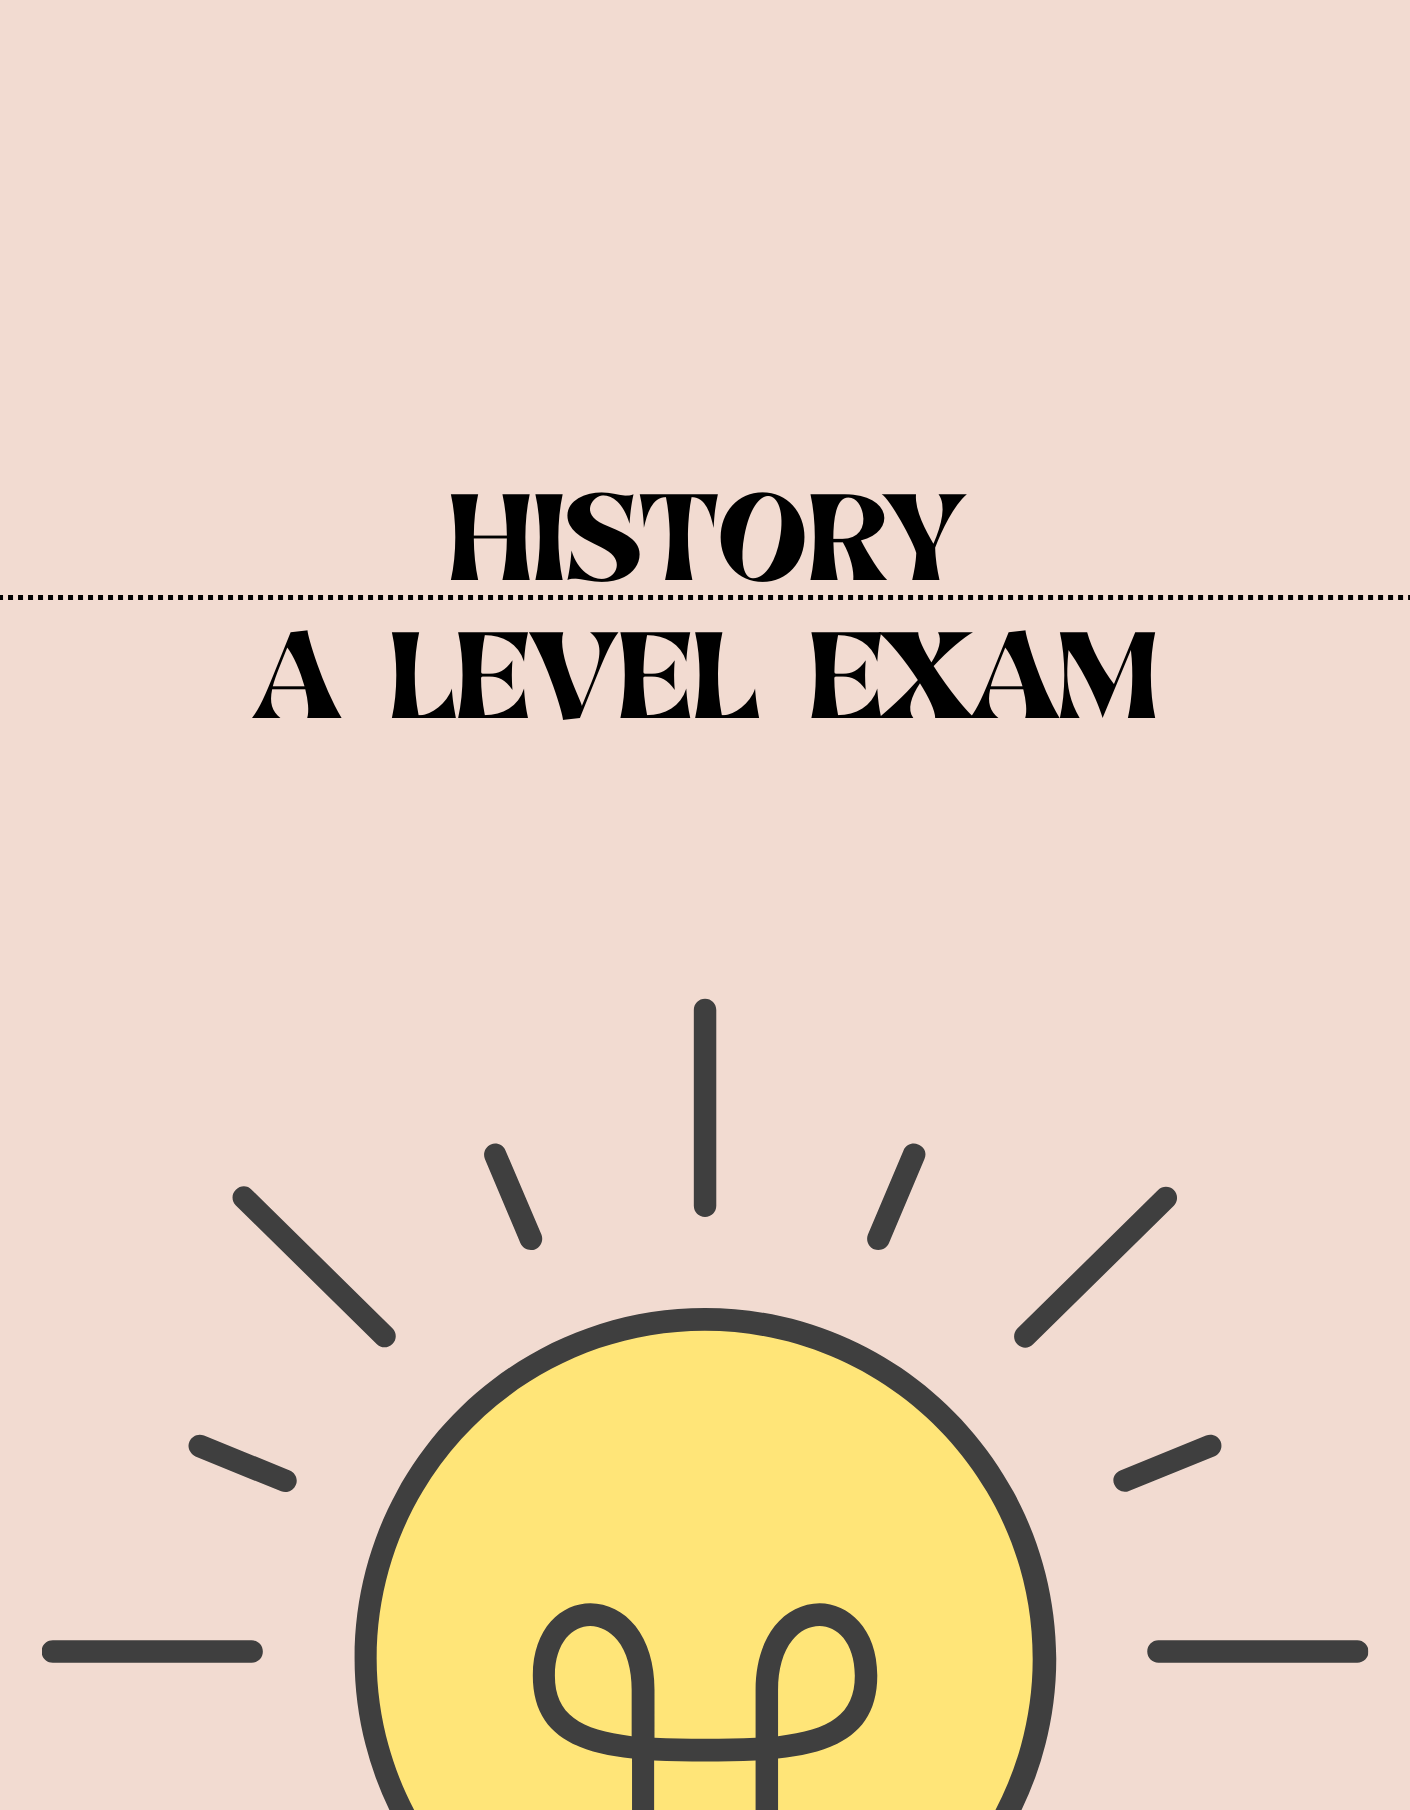 A Level - History Exam - Exam Centre Birmingham Limited